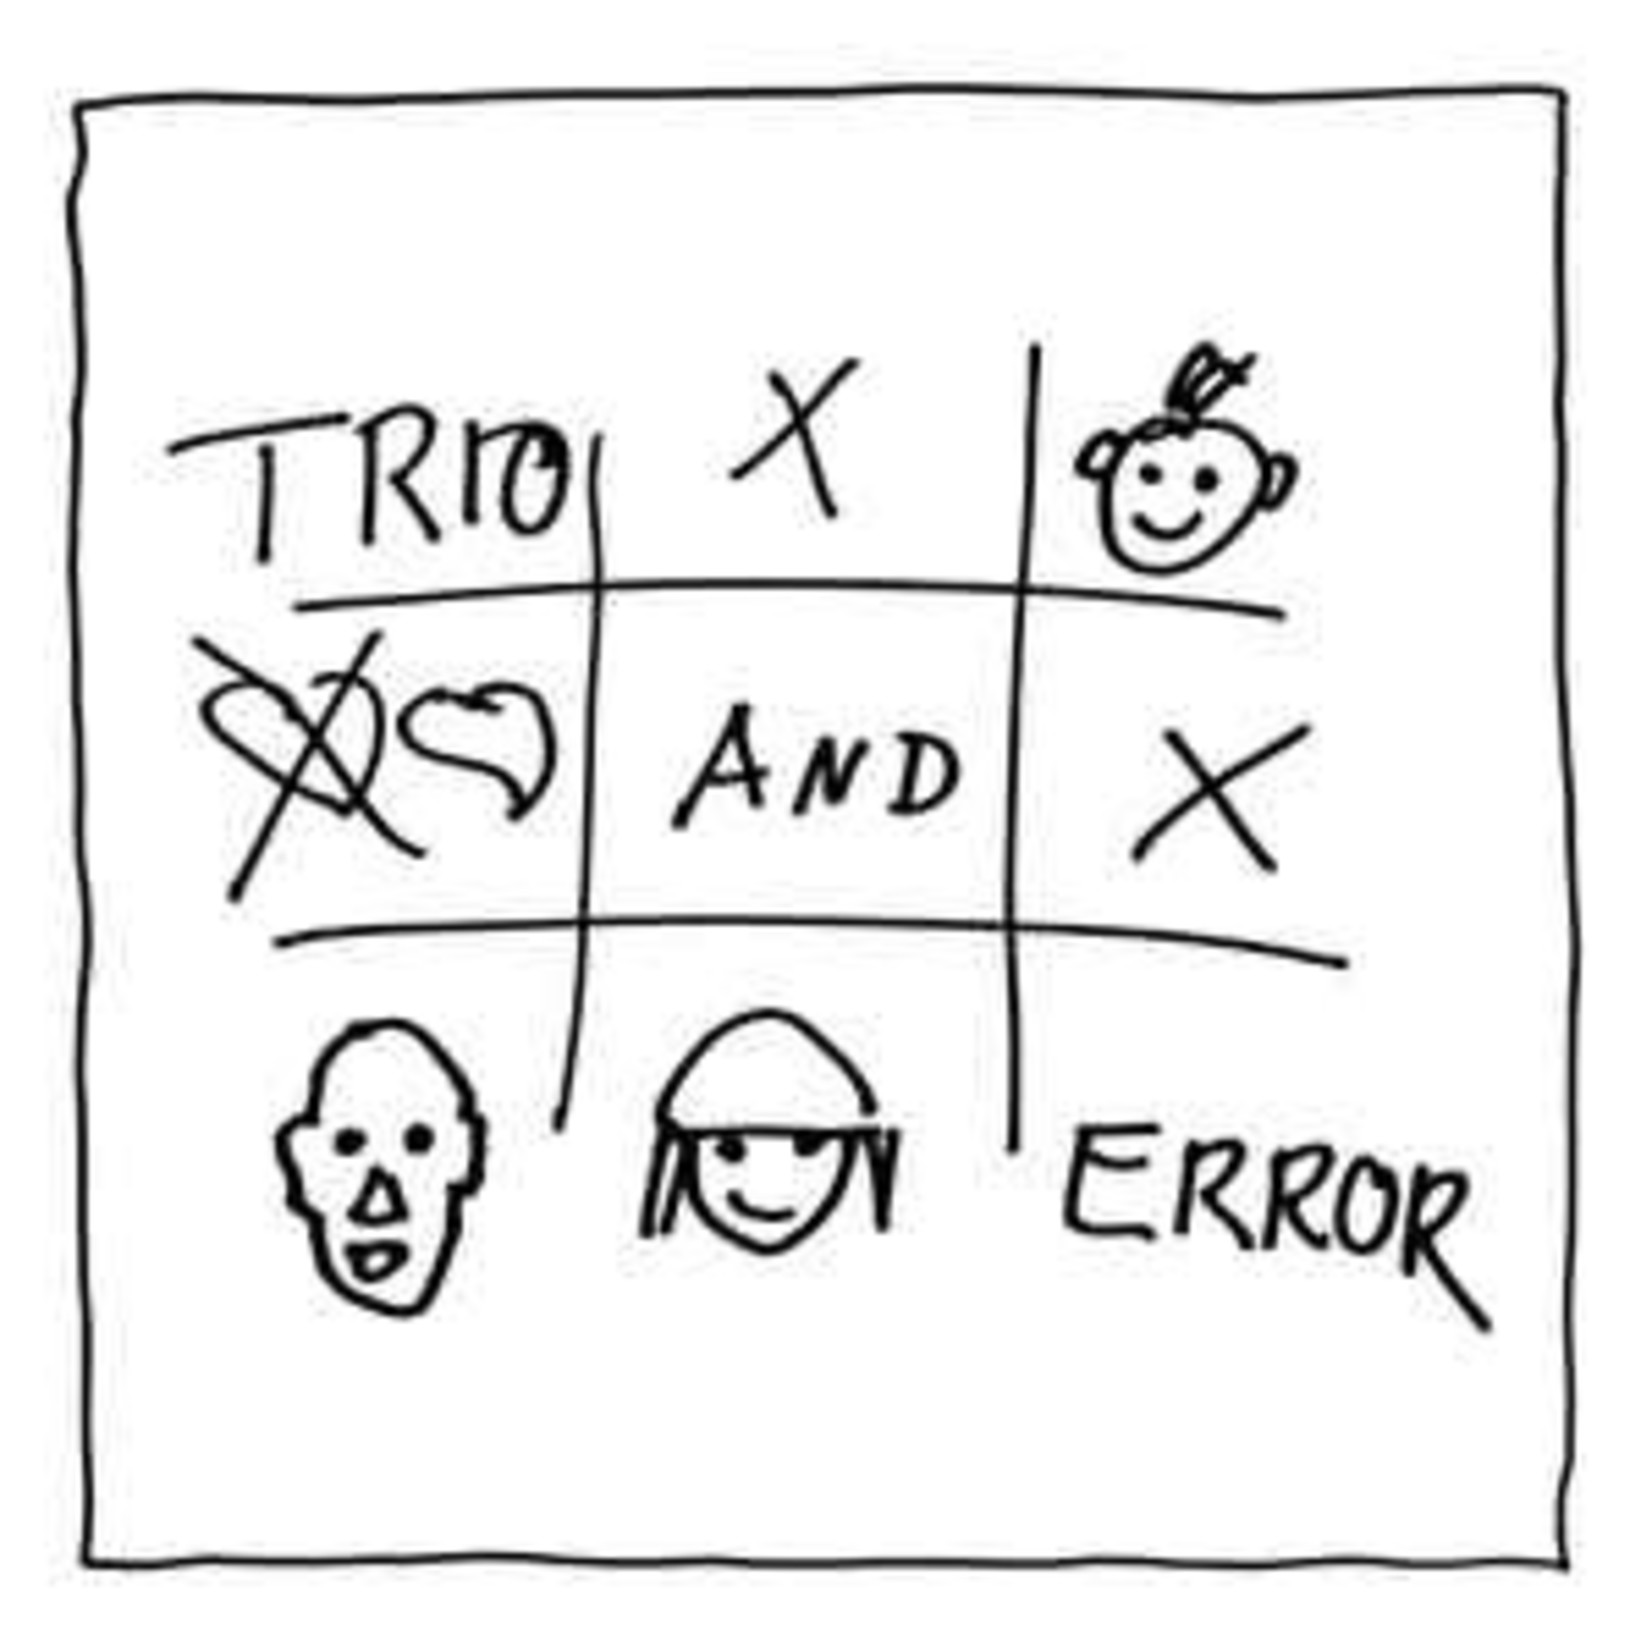 [Vintage] Trio - Trio and Error